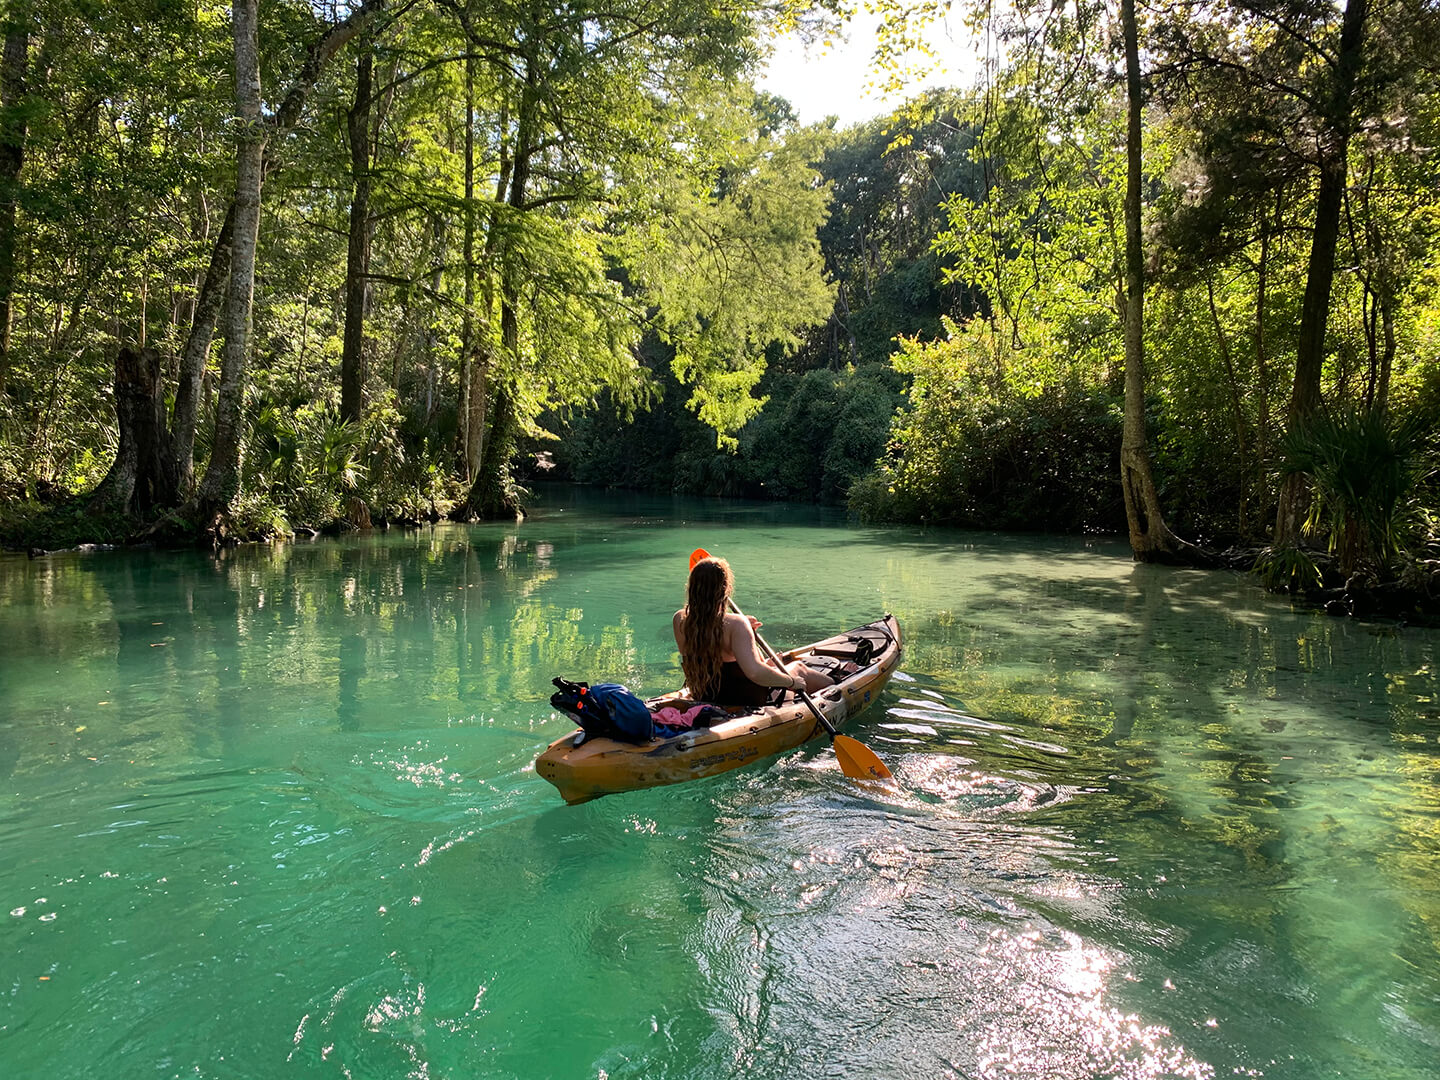 Single kayaker in river